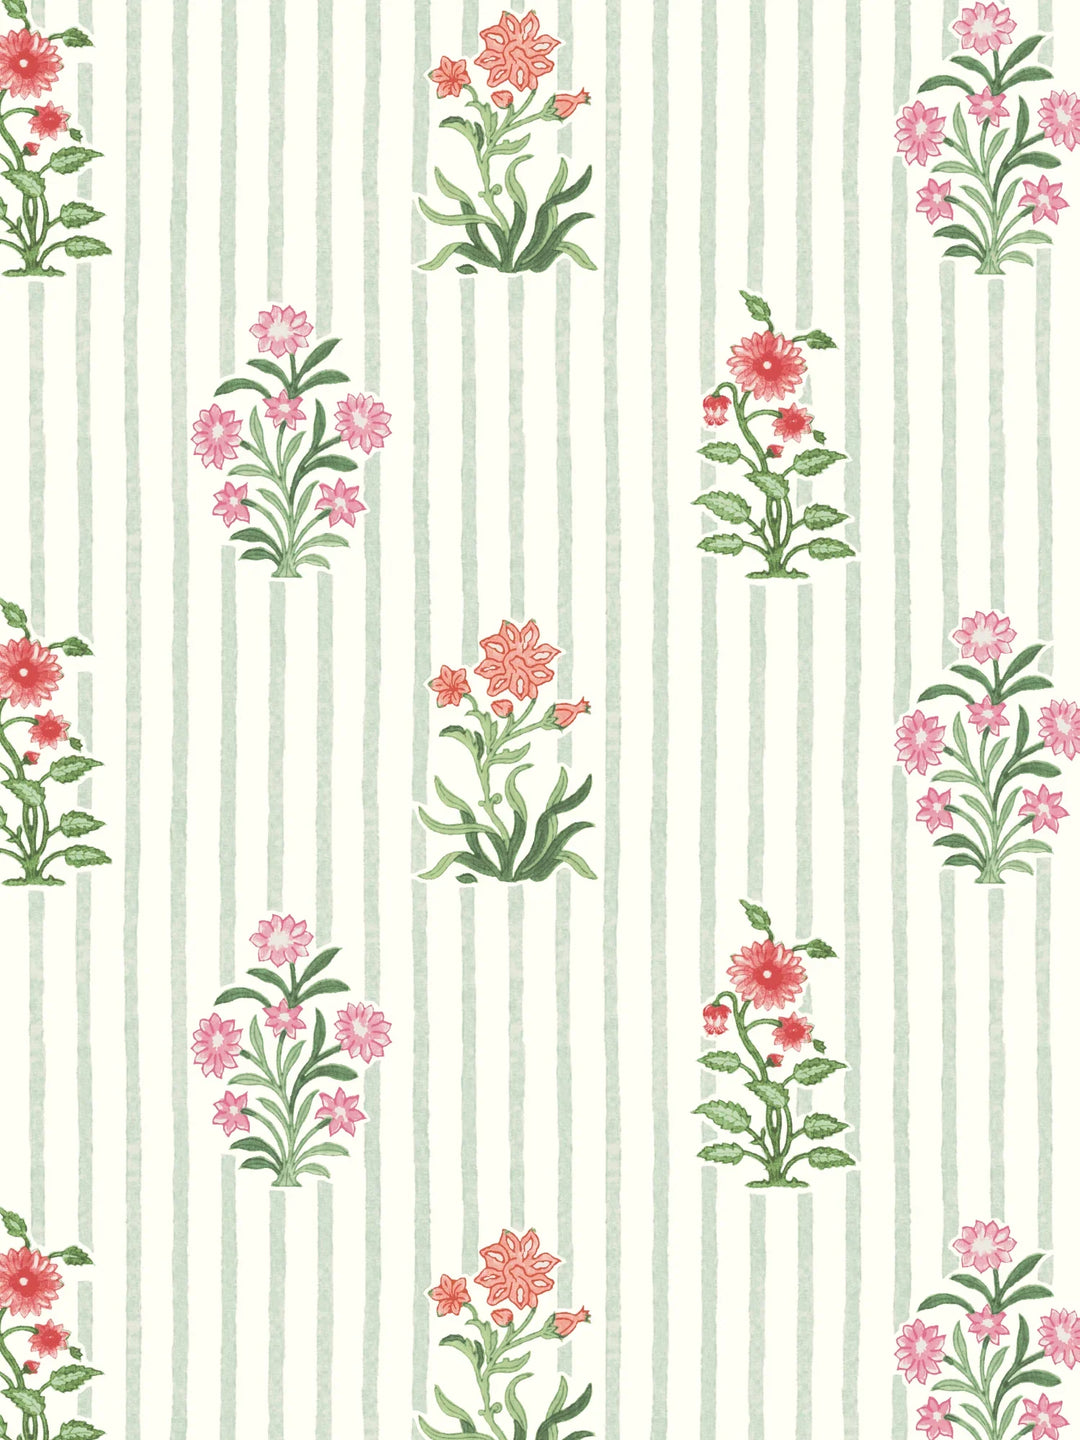 dado-atelier-bindi-flower-wallpaper-sae-pink-stripe-floral-printed-design-made-in-england